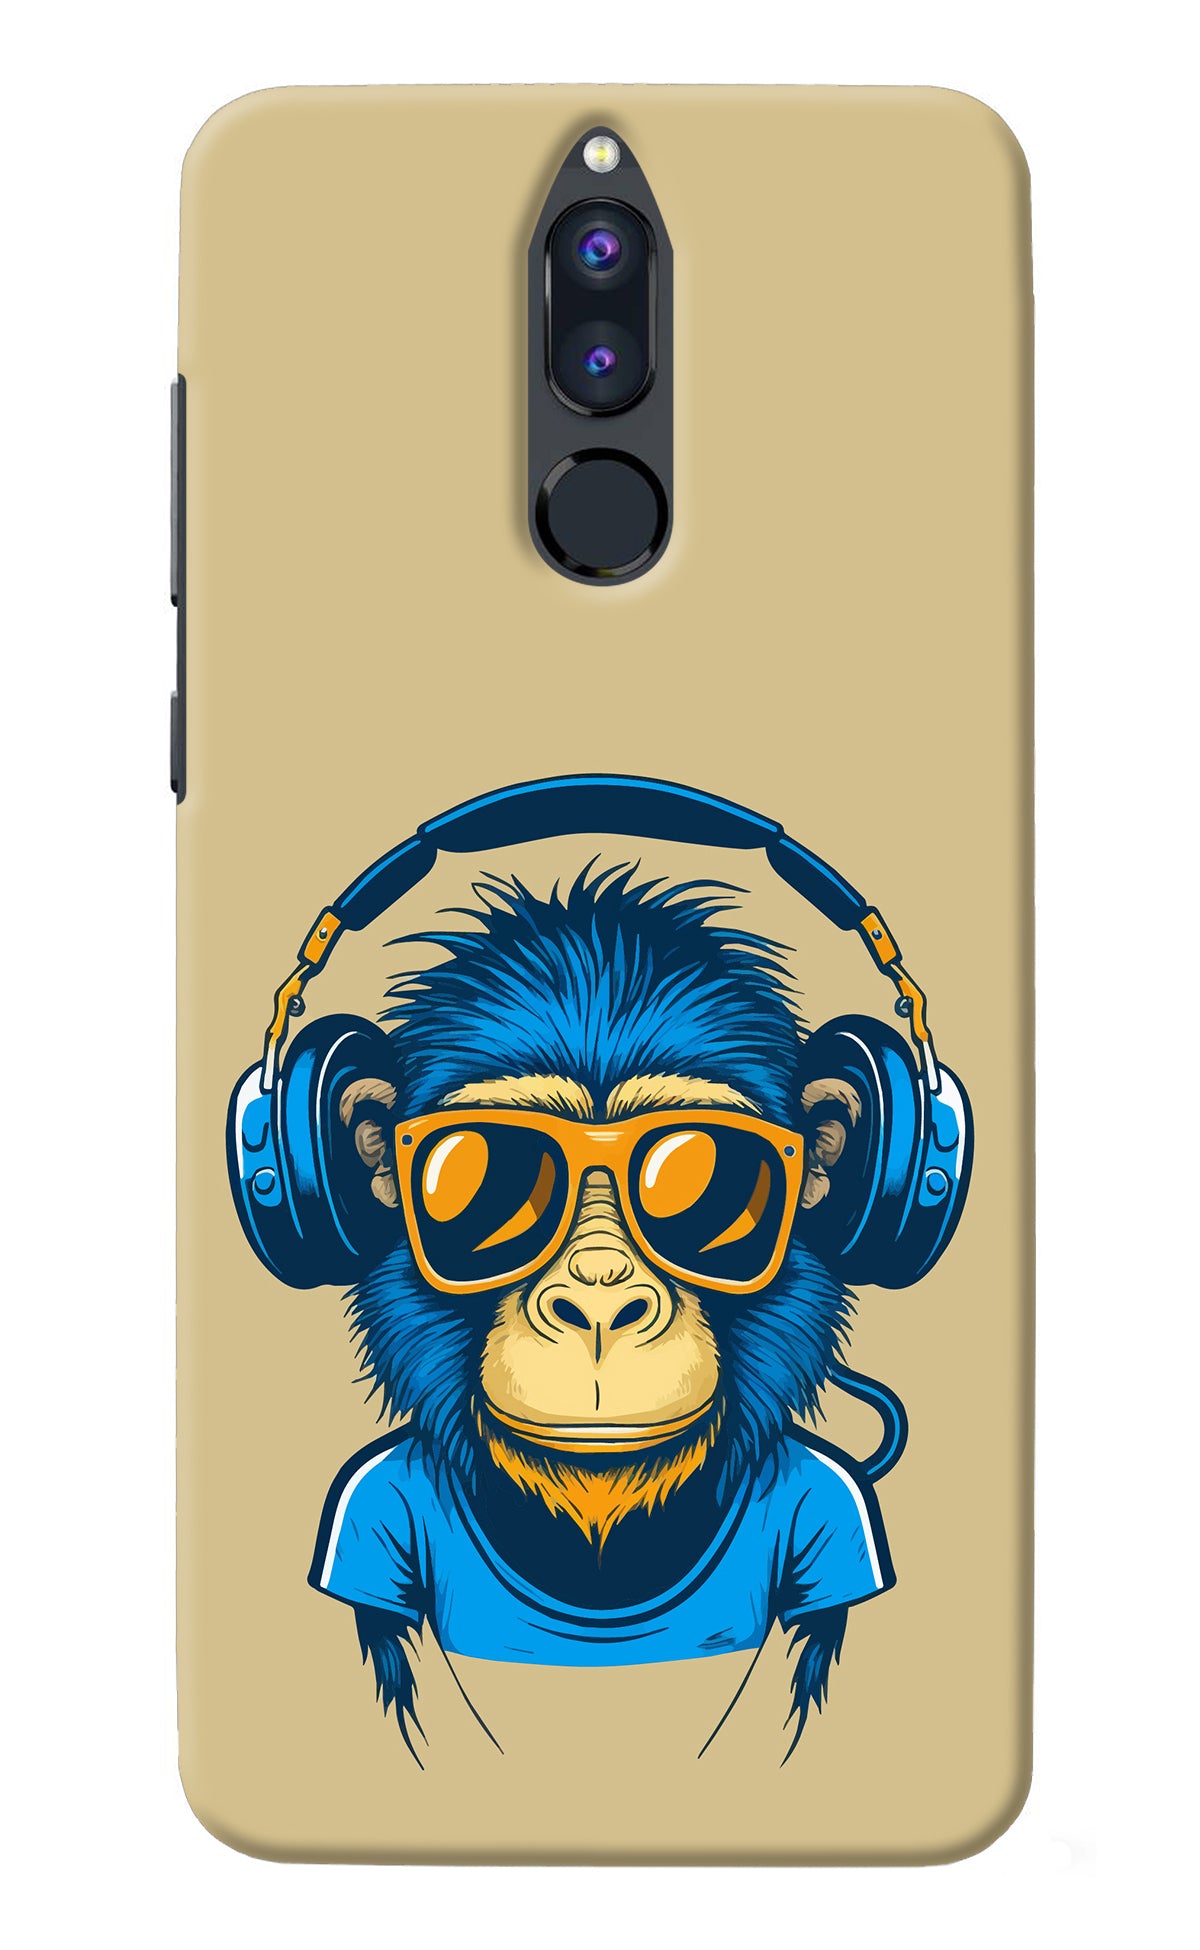 Monkey Headphone Honor 9i Back Cover